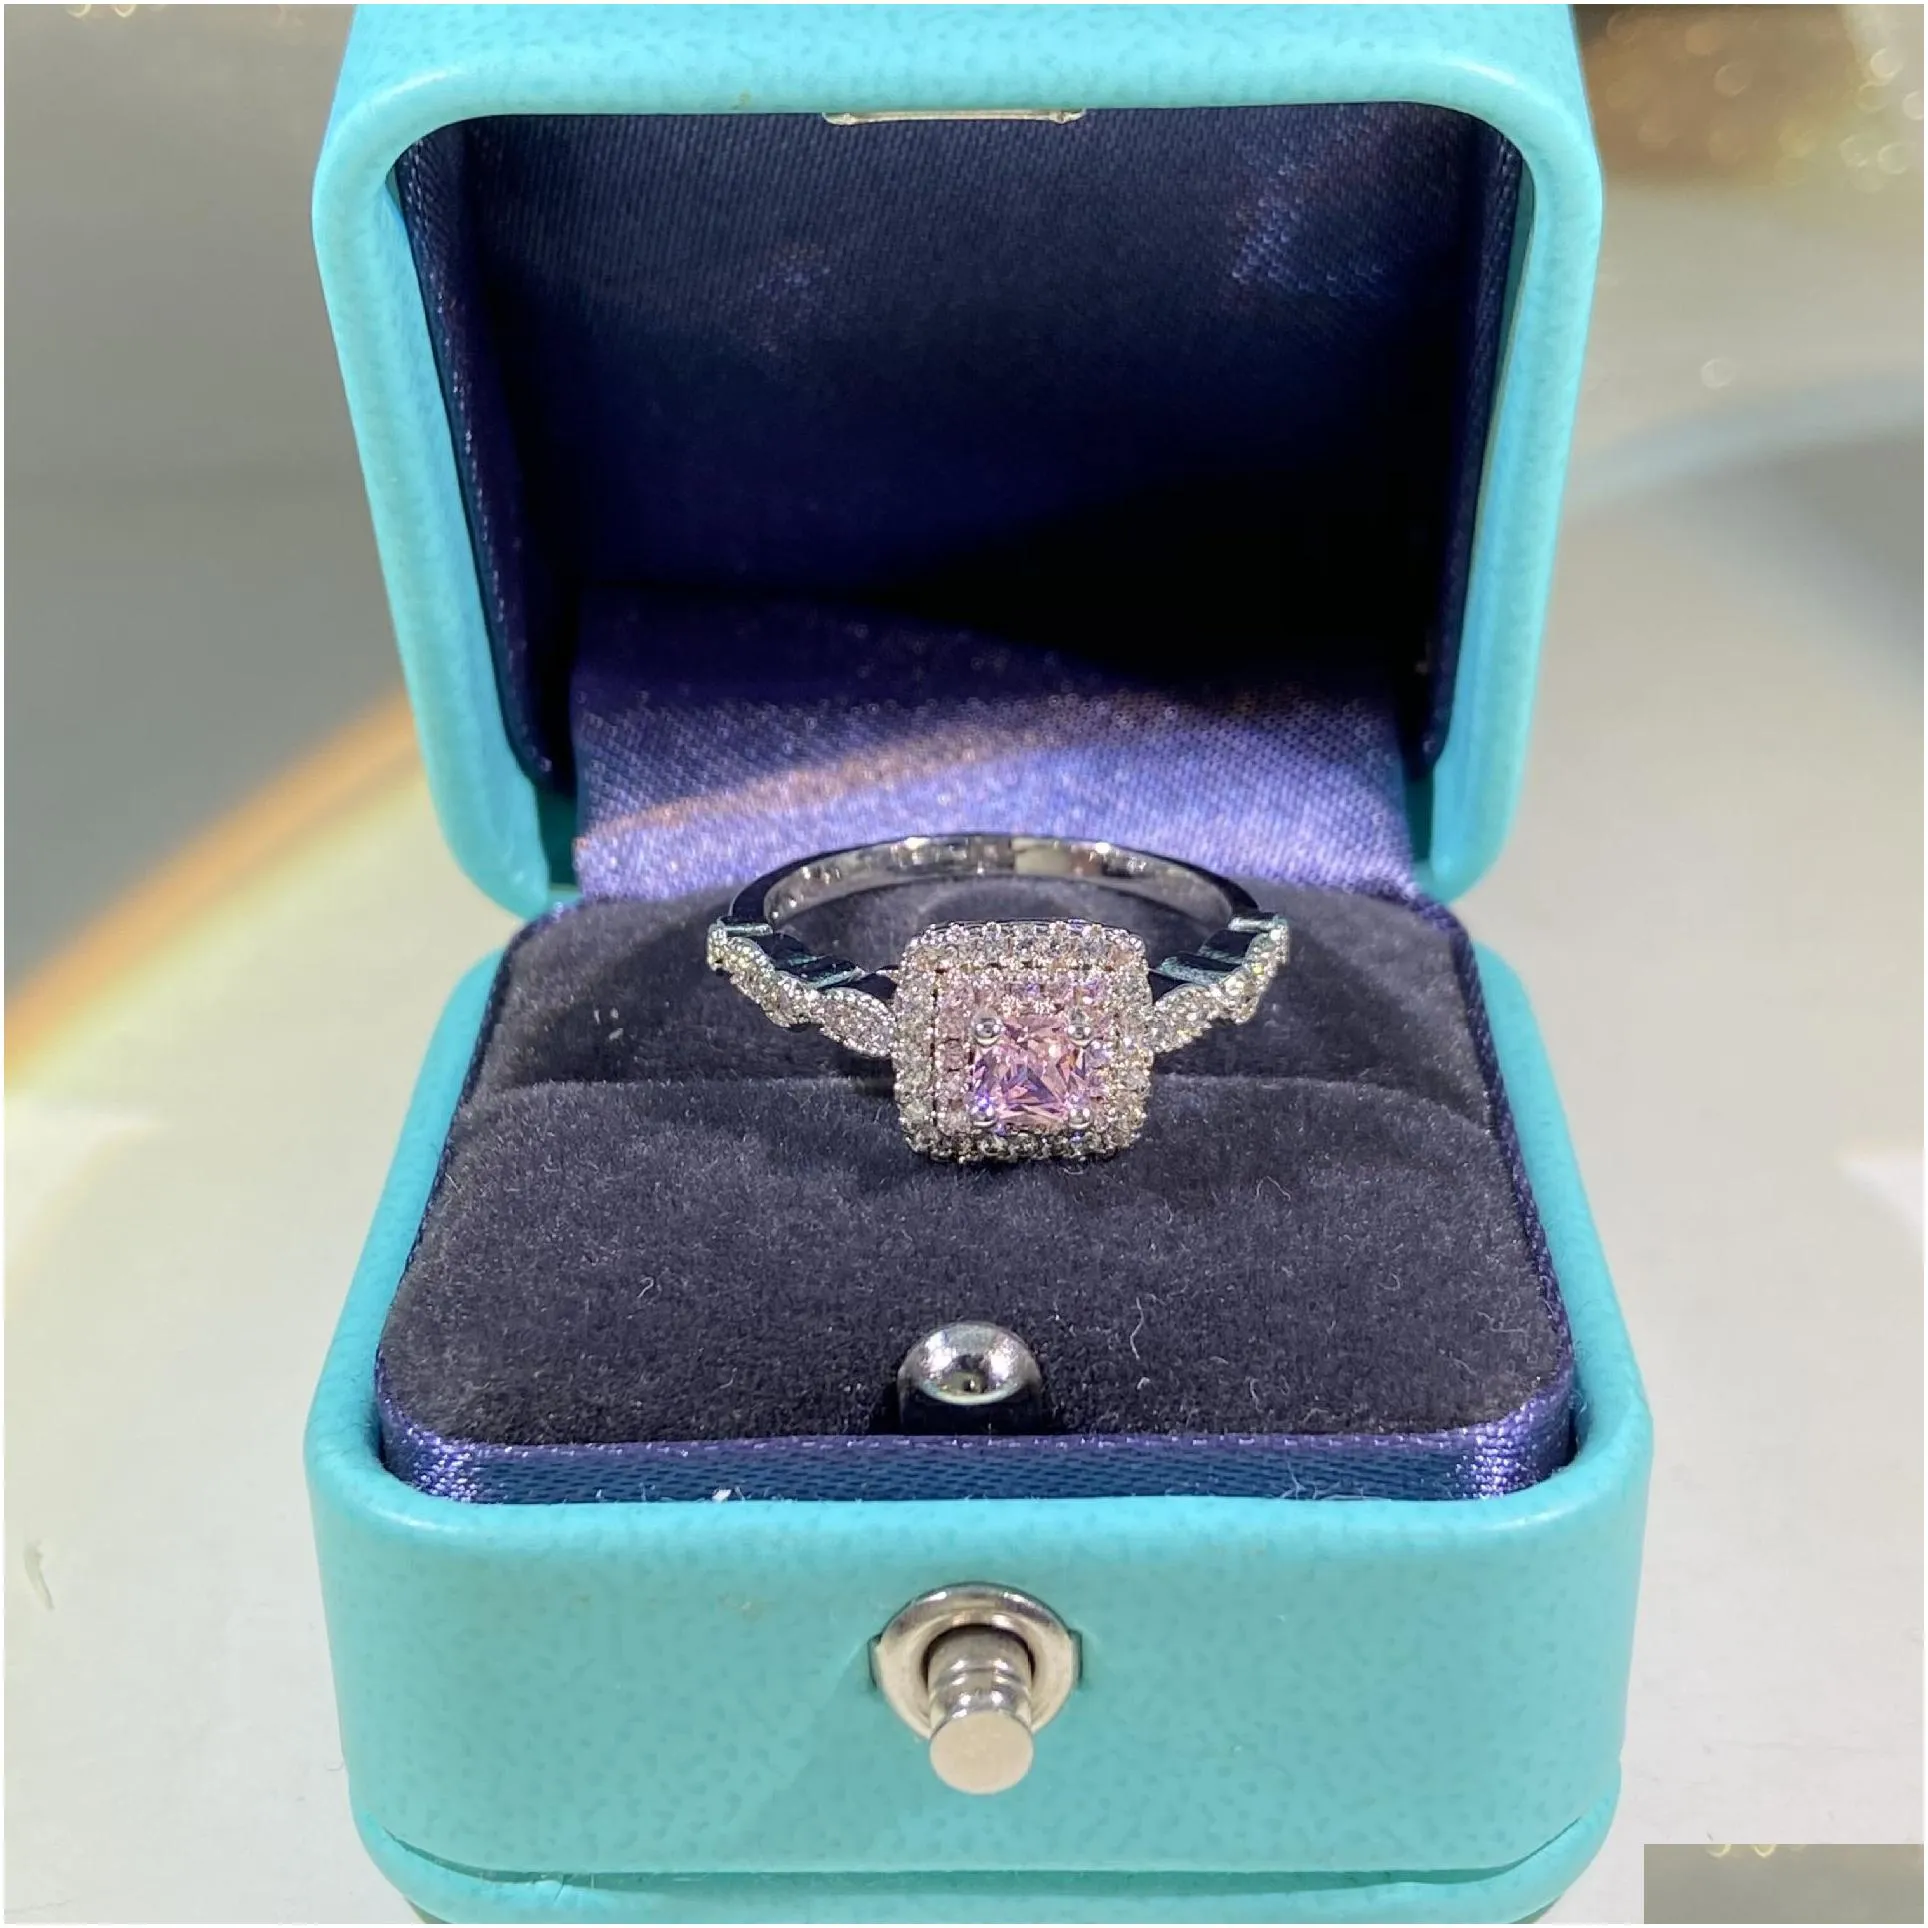 Band Rings Luxury Crystal Diamond Chinese Nail Finger Designer For Women Girls S925 Sier White Pink  Elegant Cz Zircon An Ota2F